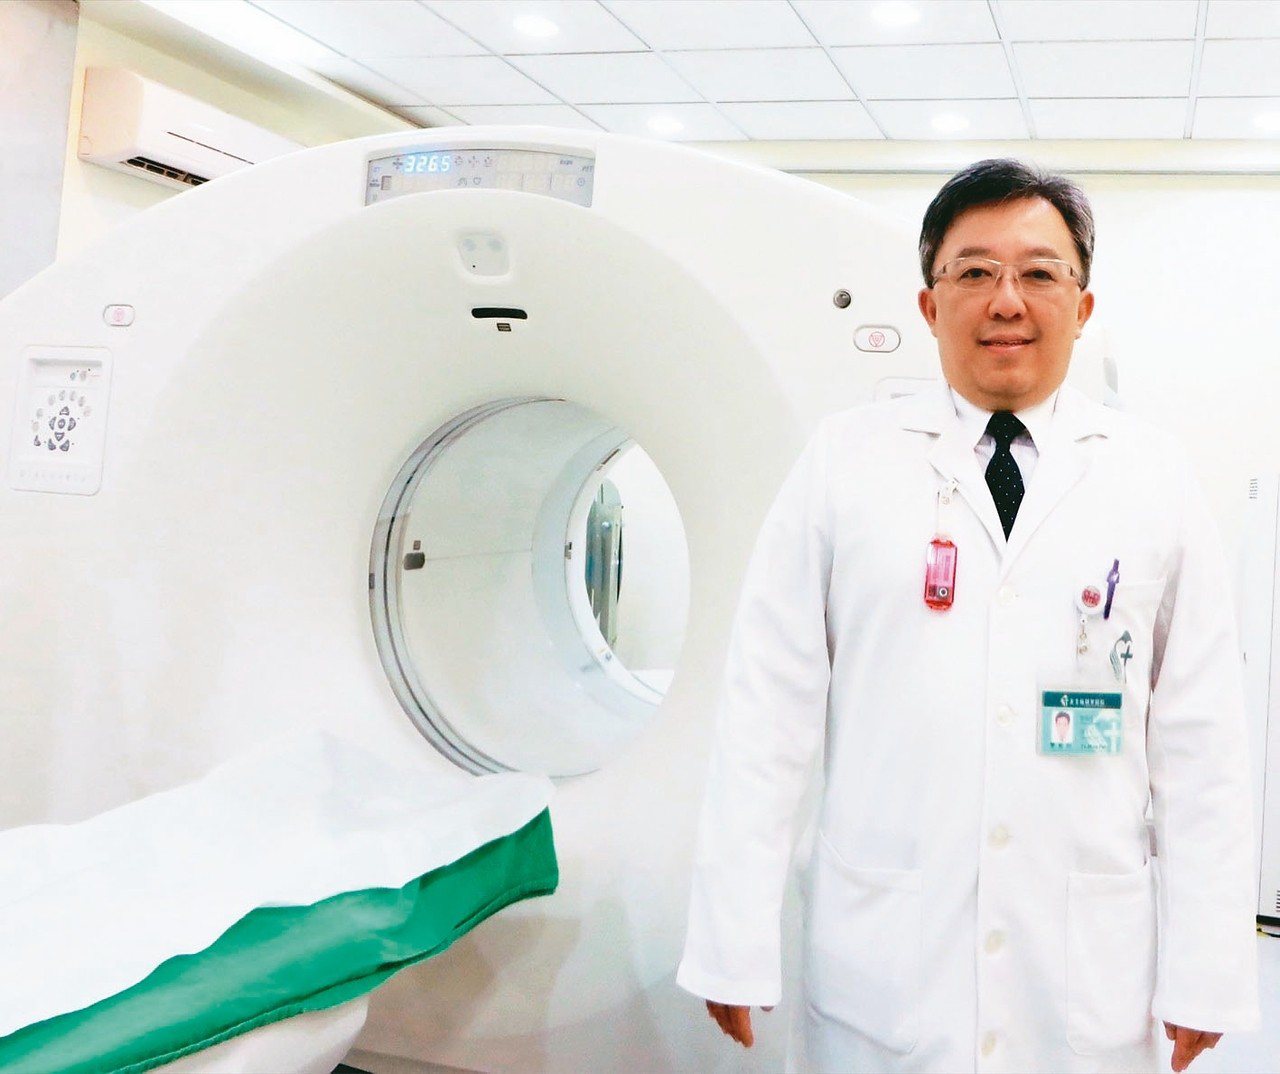 新店耕莘醫院醫務部副主任兼核子醫學科主任樊裕明與正子斷層造影掃描儀。